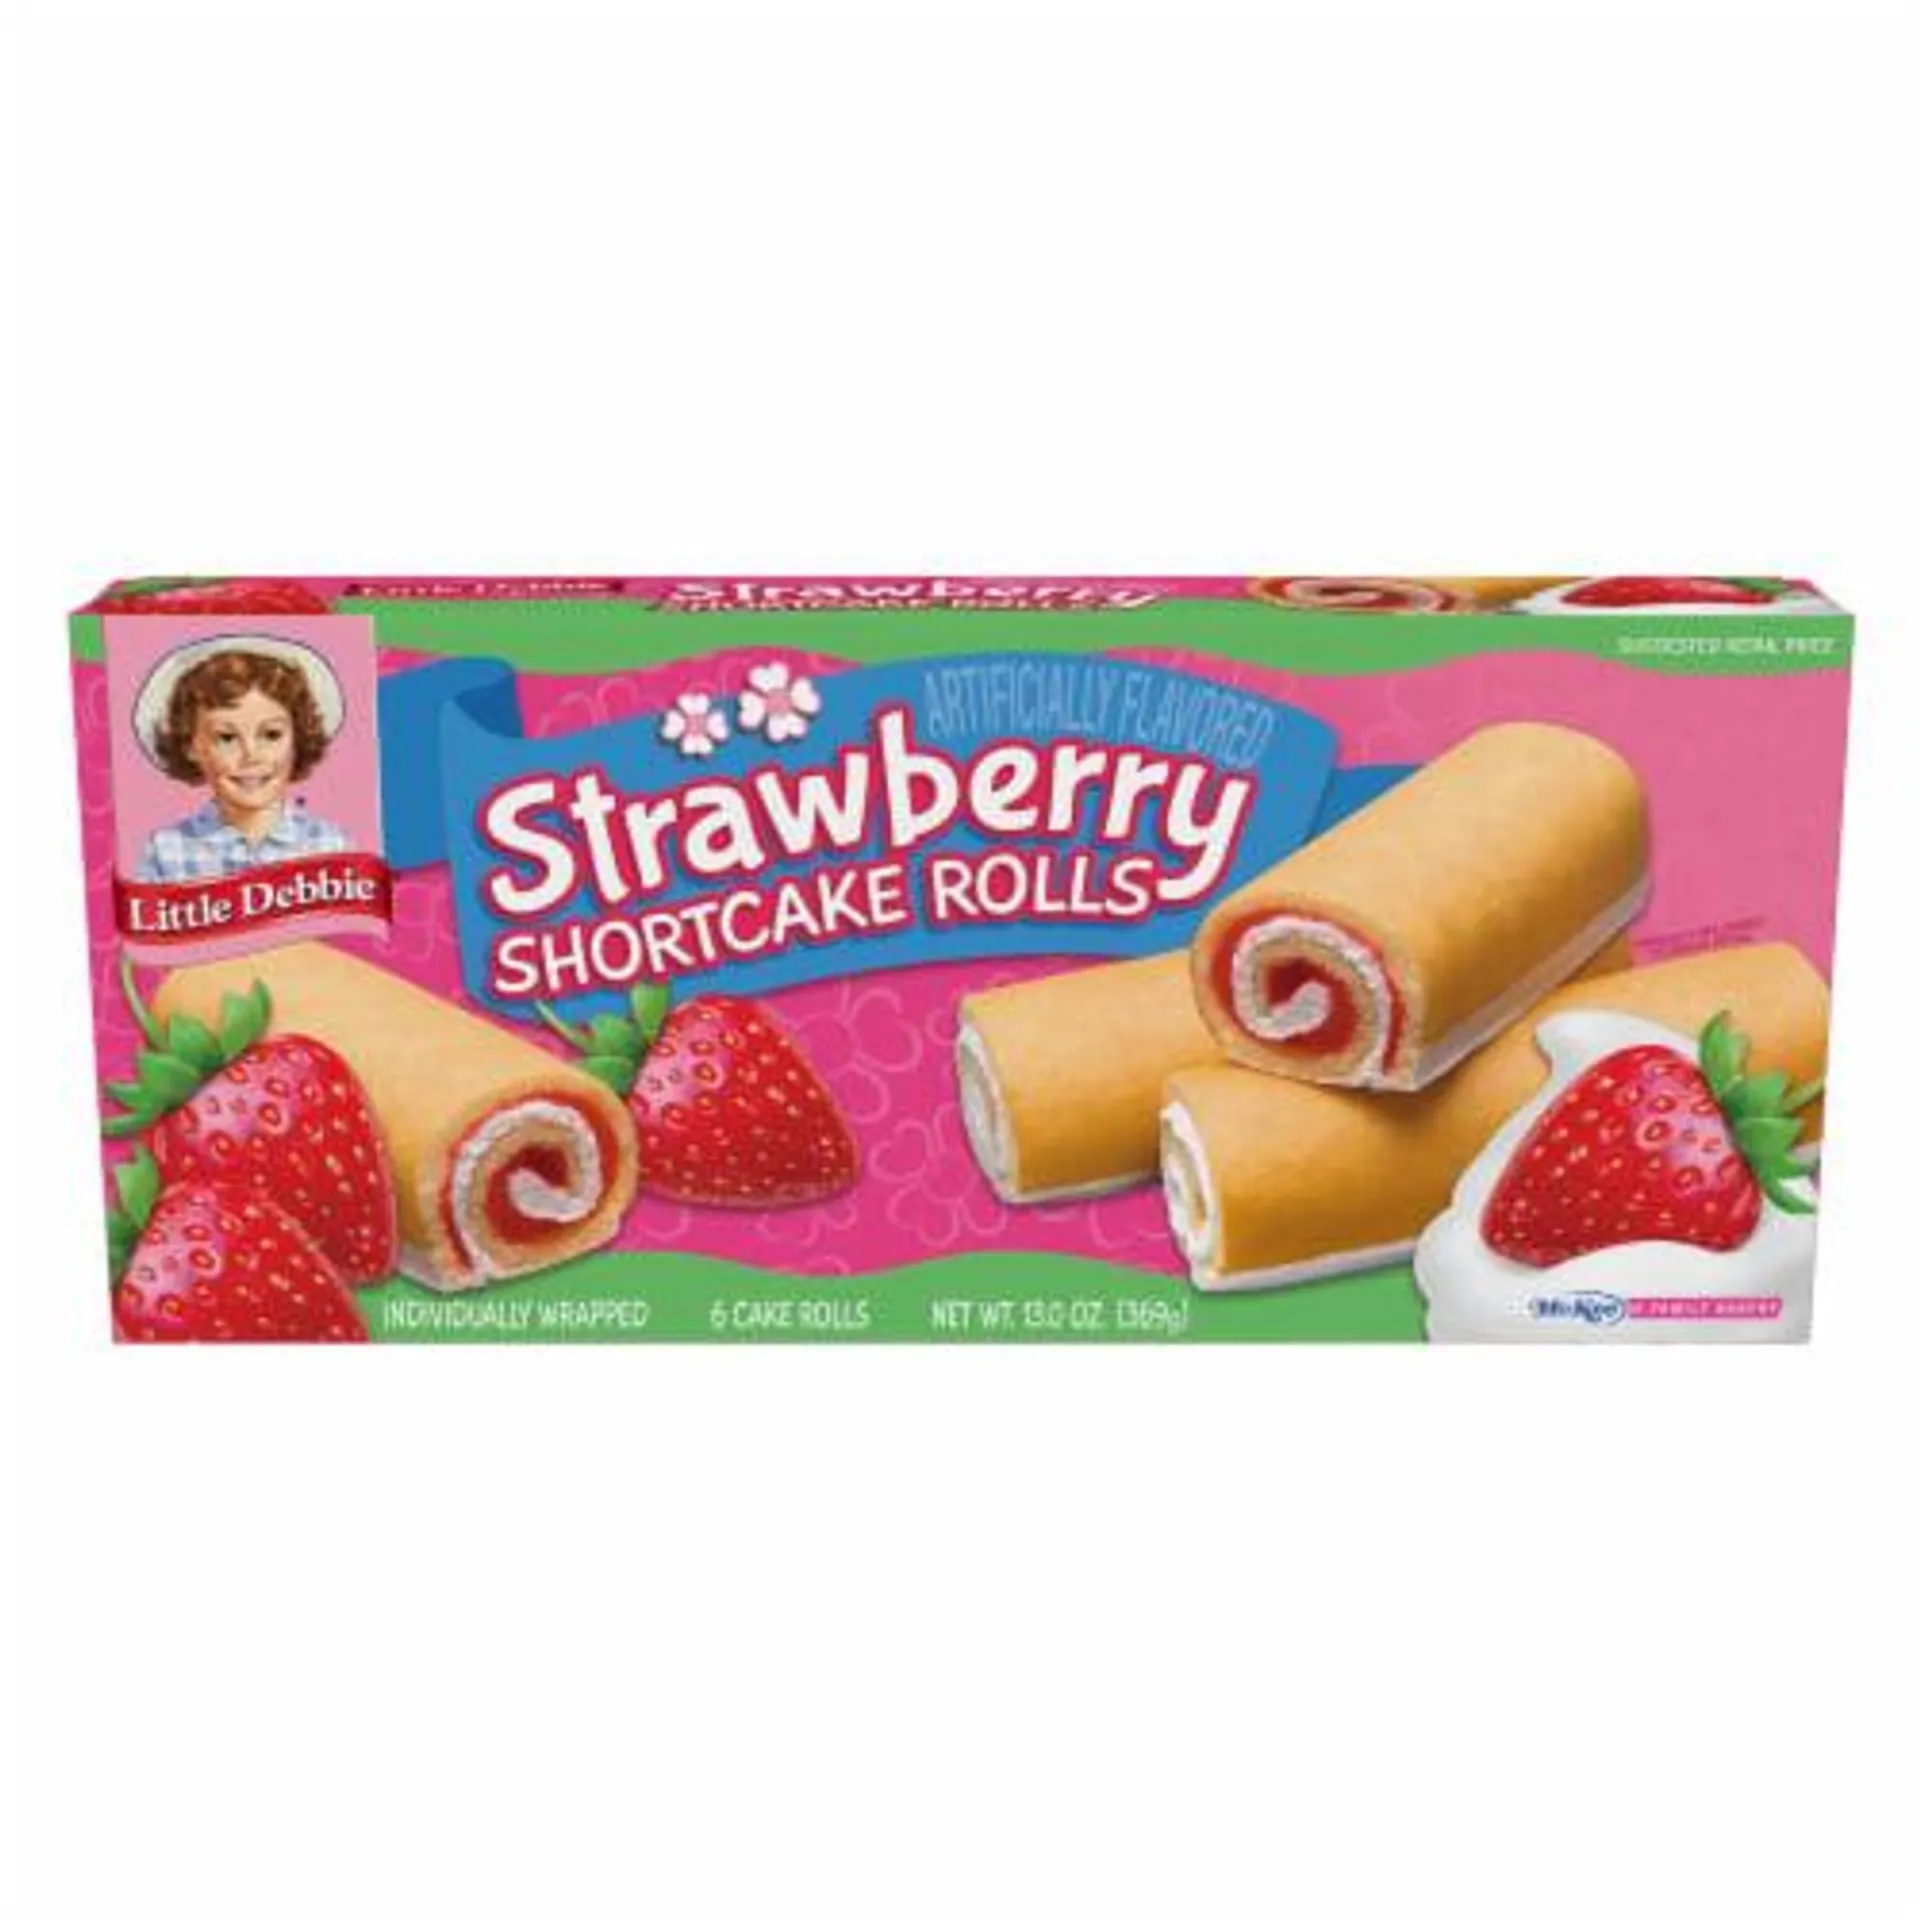 Little Debbie® Strawberry Shortcake Rolls Family Pack